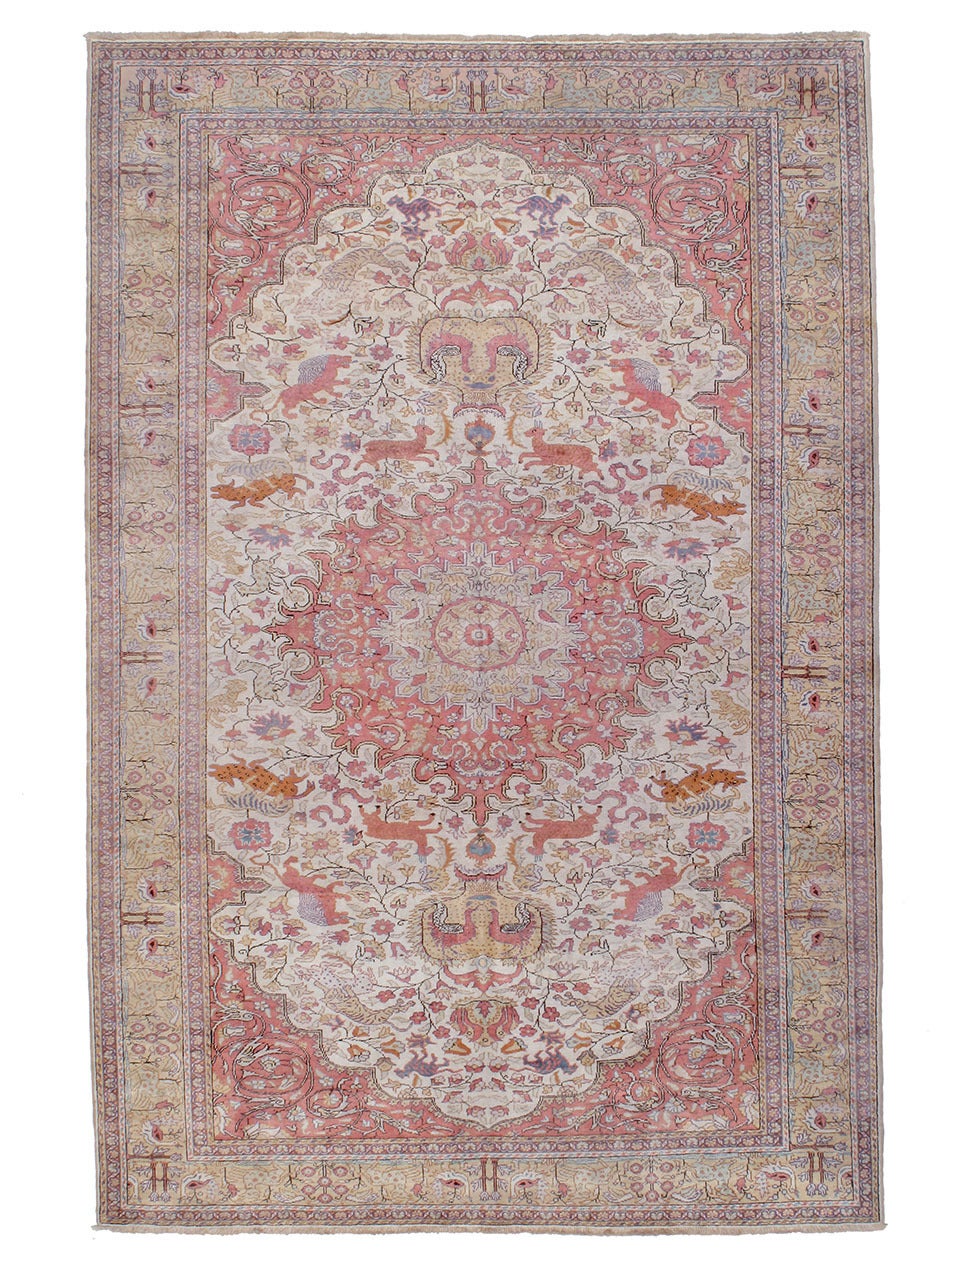 Cotton Kayseri "Hunting" Carpet